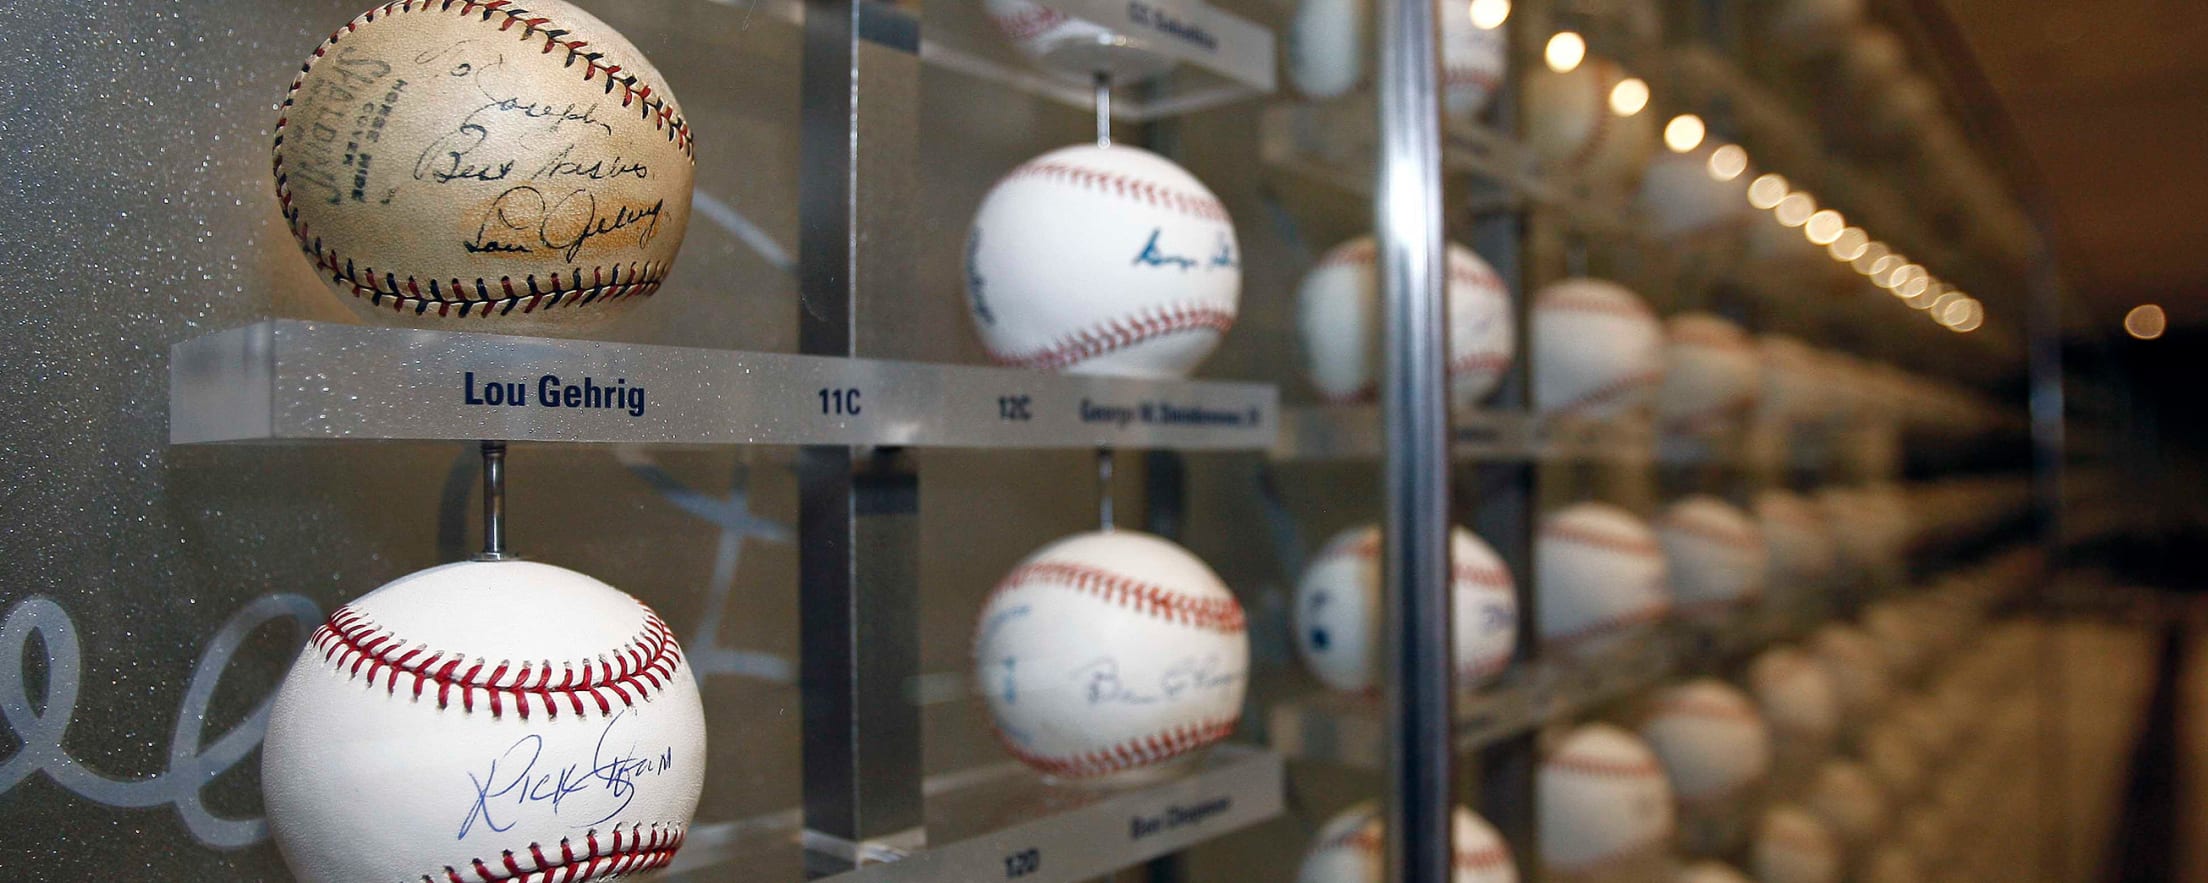 Ballpark Quirks: Yankee Stadium's living museum in Monument Park